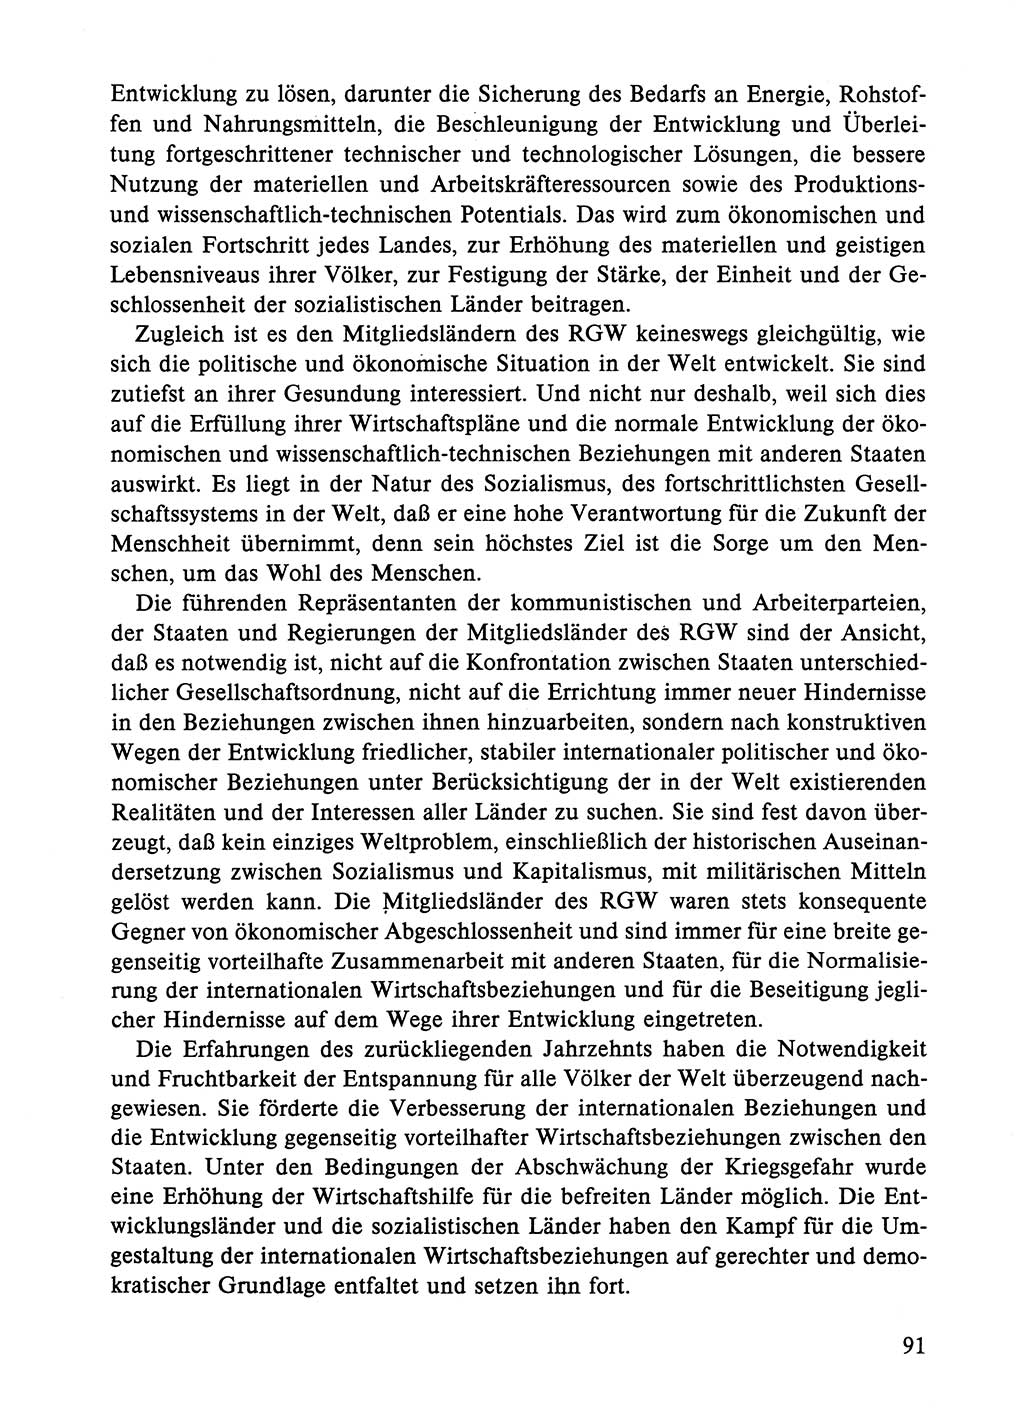 Dokumente der Sozialistischen Einheitspartei Deutschlands (SED) [Deutsche Demokratische Republik (DDR)] 1984-1985, Seite 91 (Dok. SED DDR 1984-1985, S. 91)